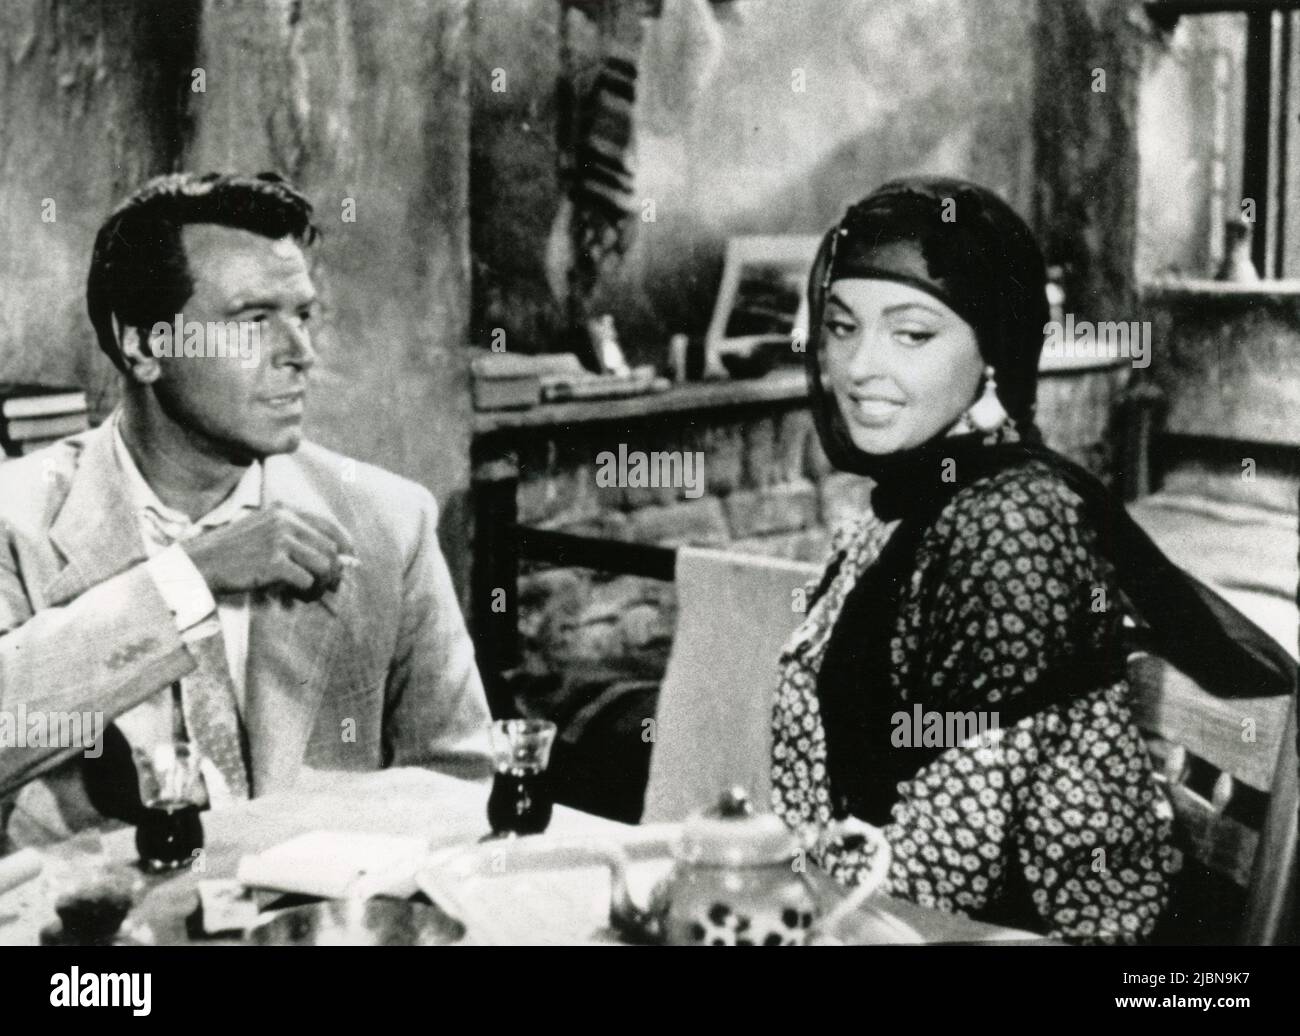 Actors O.W. Fischer and Nadja Tiller in the movie El Hakim, Germany 1957 Stock Photo